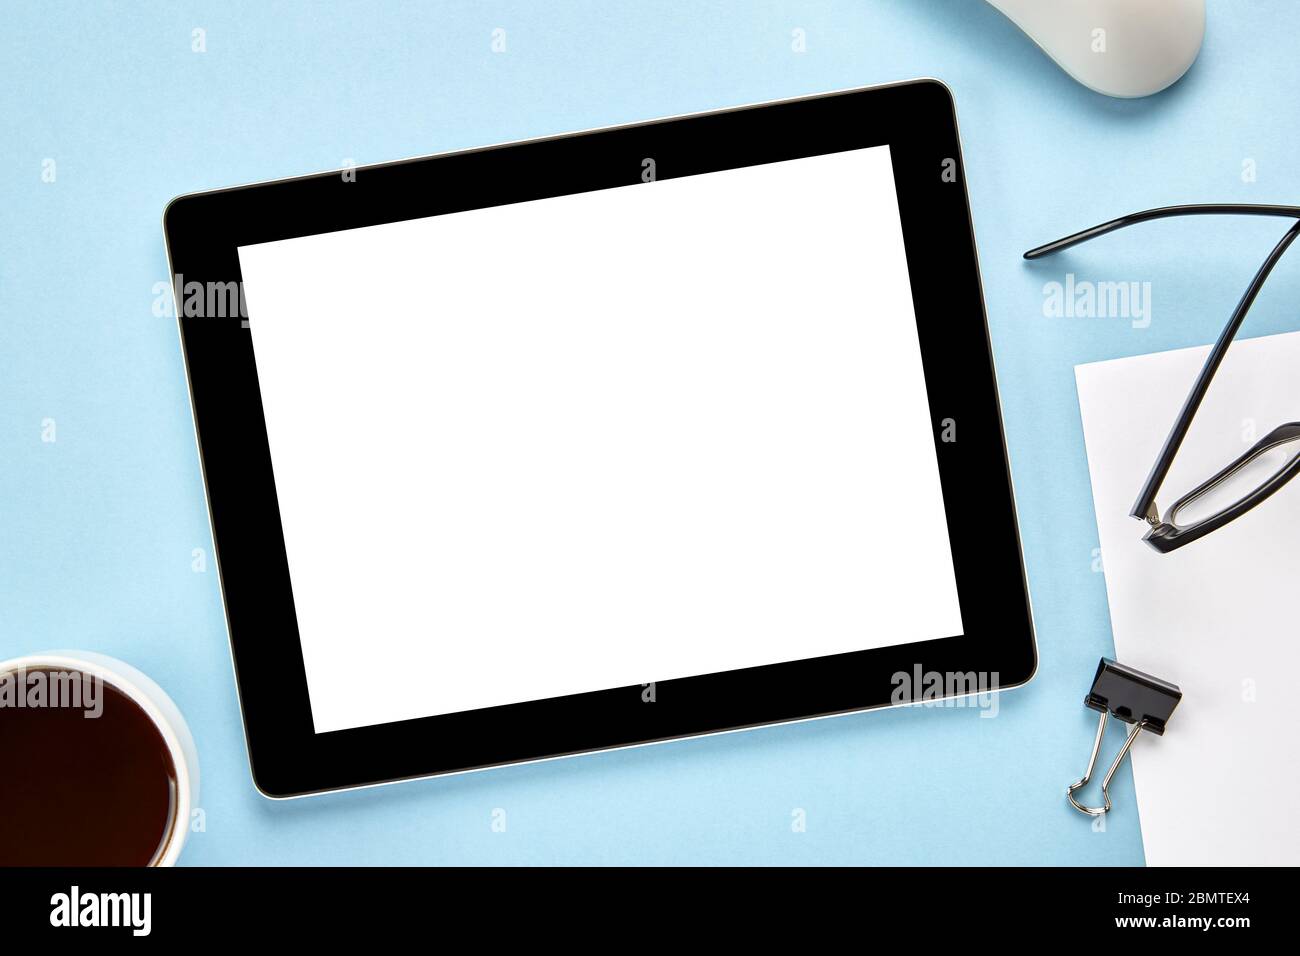 Imagen de un Tablet PC con pantalla blanca en blanco sobre una superficie azul. Disposición plana Foto de stock